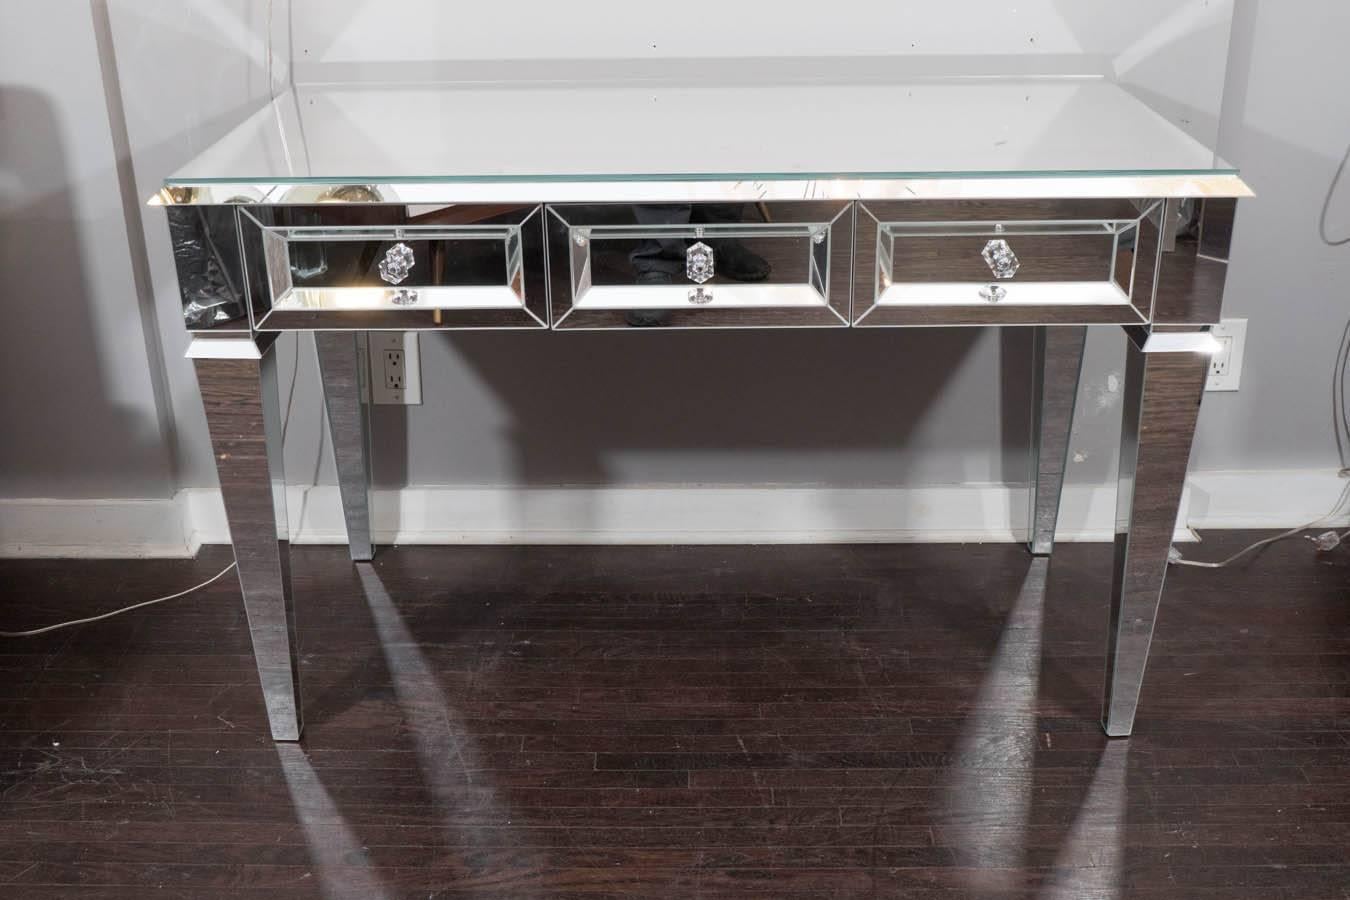 Benutzerdefinierte Beveled Starphire Spiegel Vanity Schreibtisch. Verschiedene Größen, Glasoberflächen und Beschläge können individuell angepasst werden.